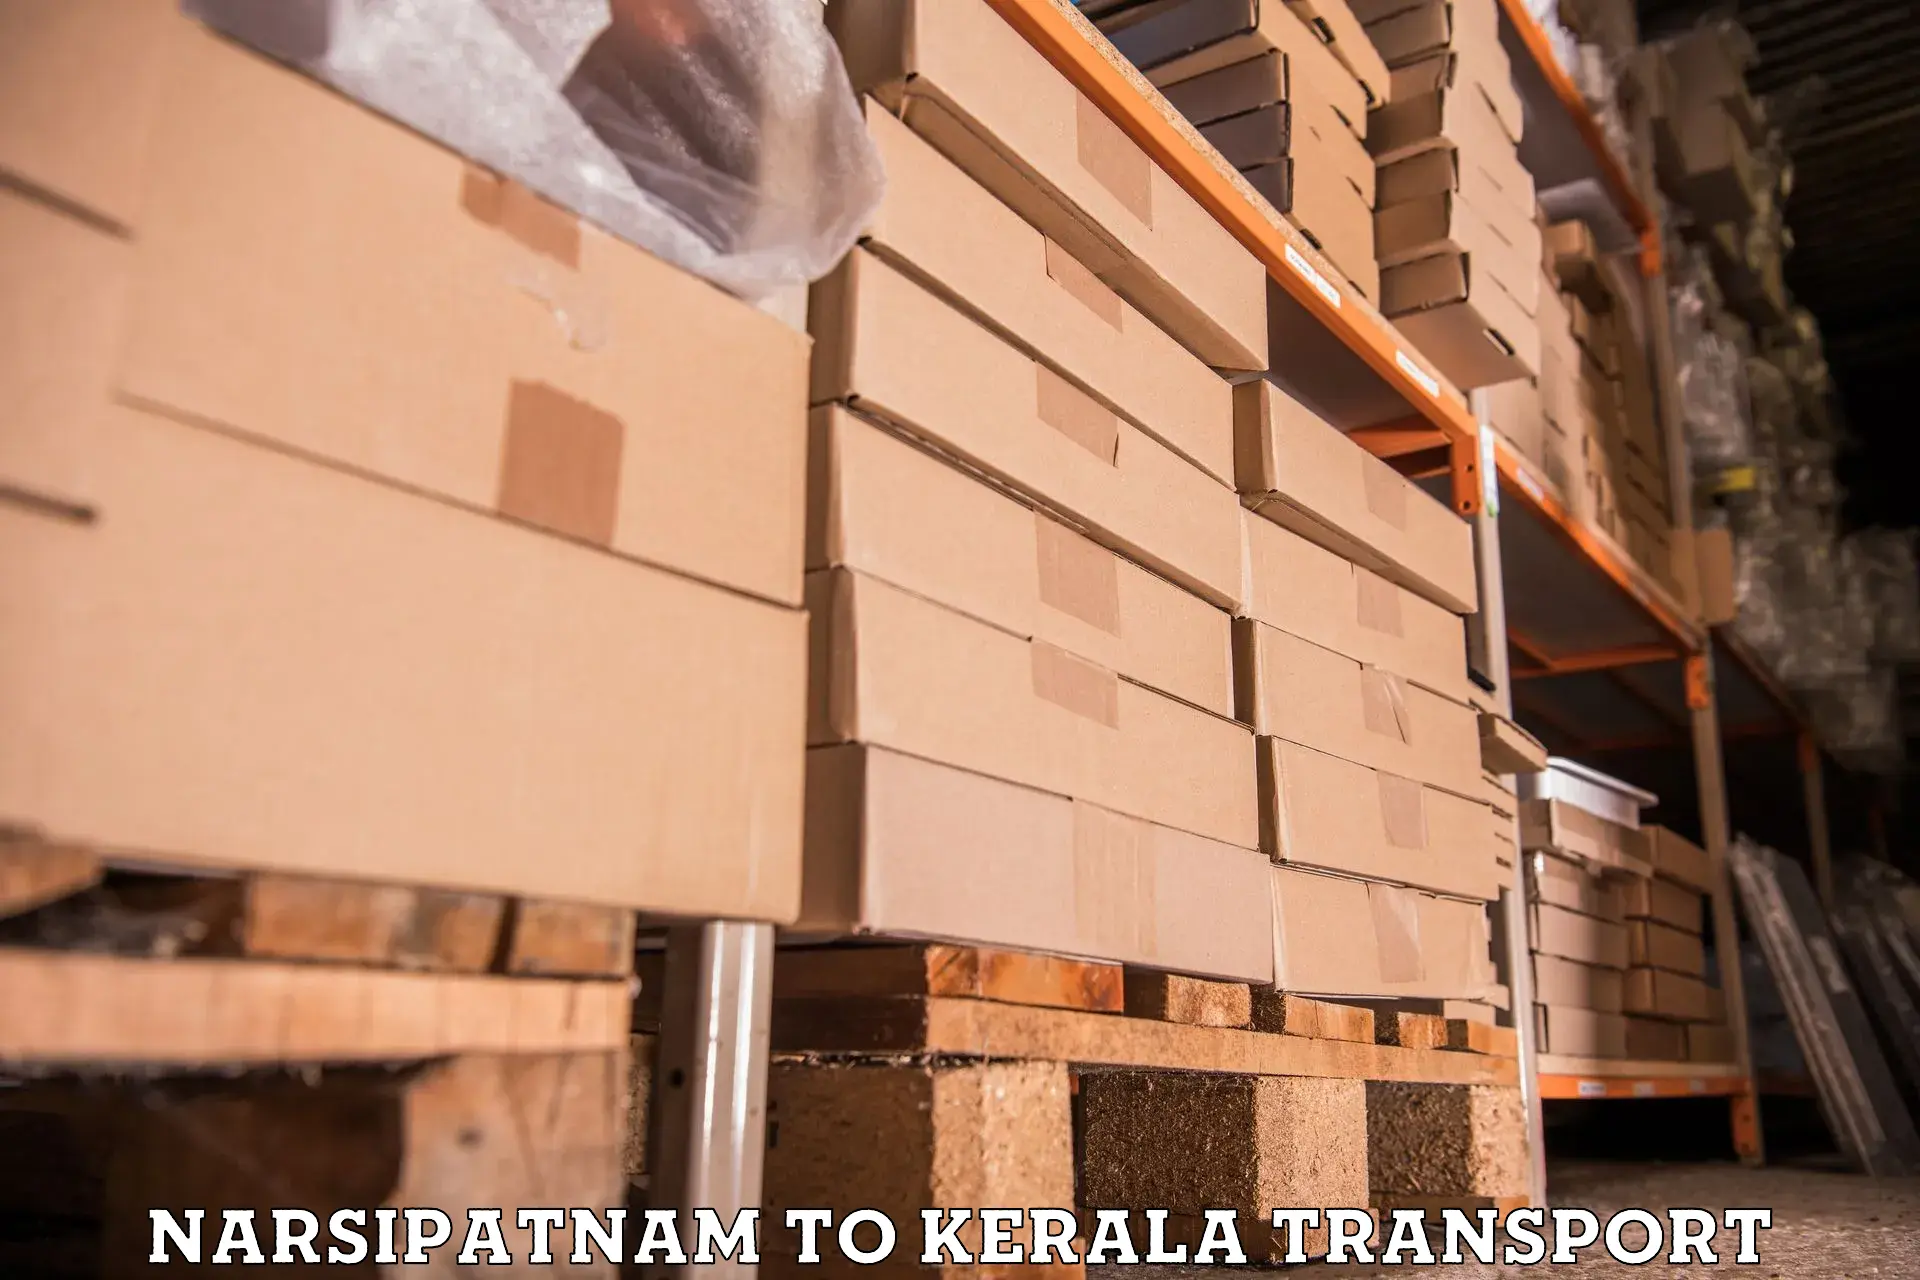 Goods delivery service Narsipatnam to Perumbavoor